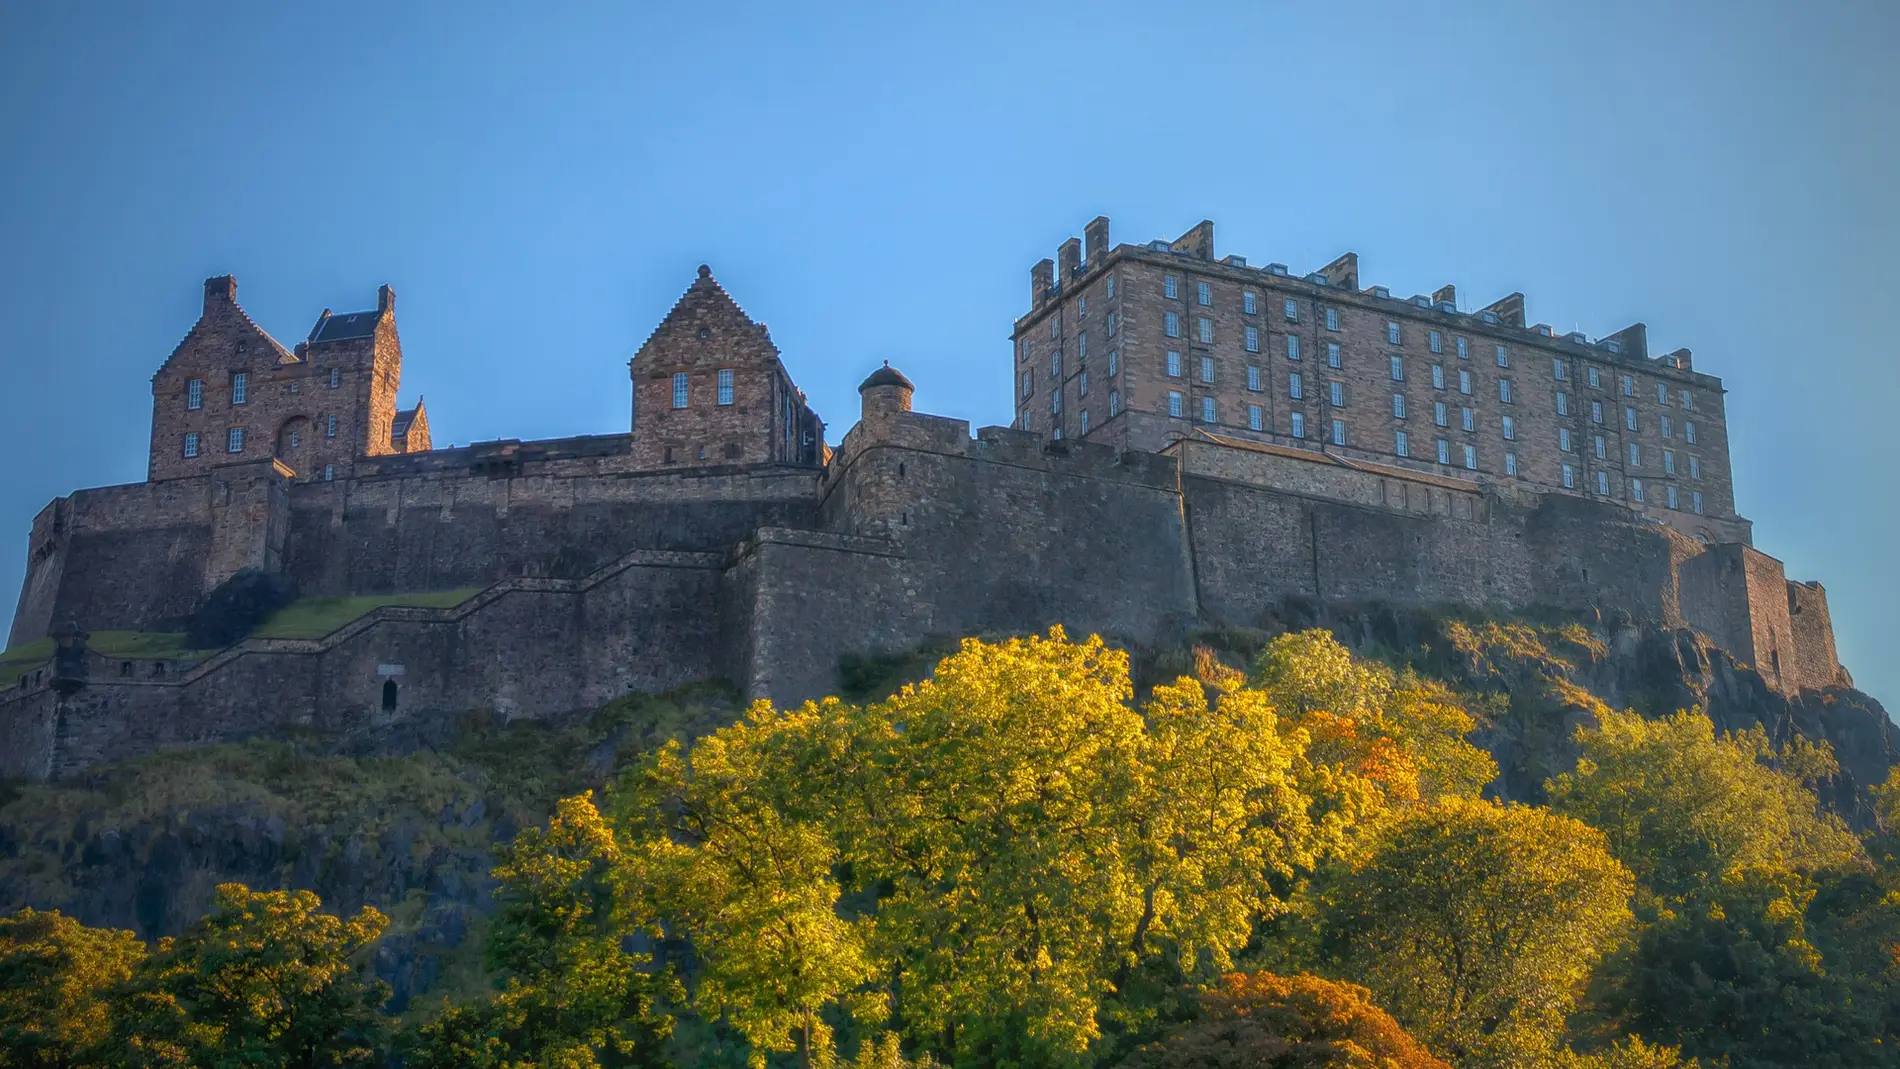 Datos sorprendentes sobre el castillo de Edimburgo que quizá no sabías